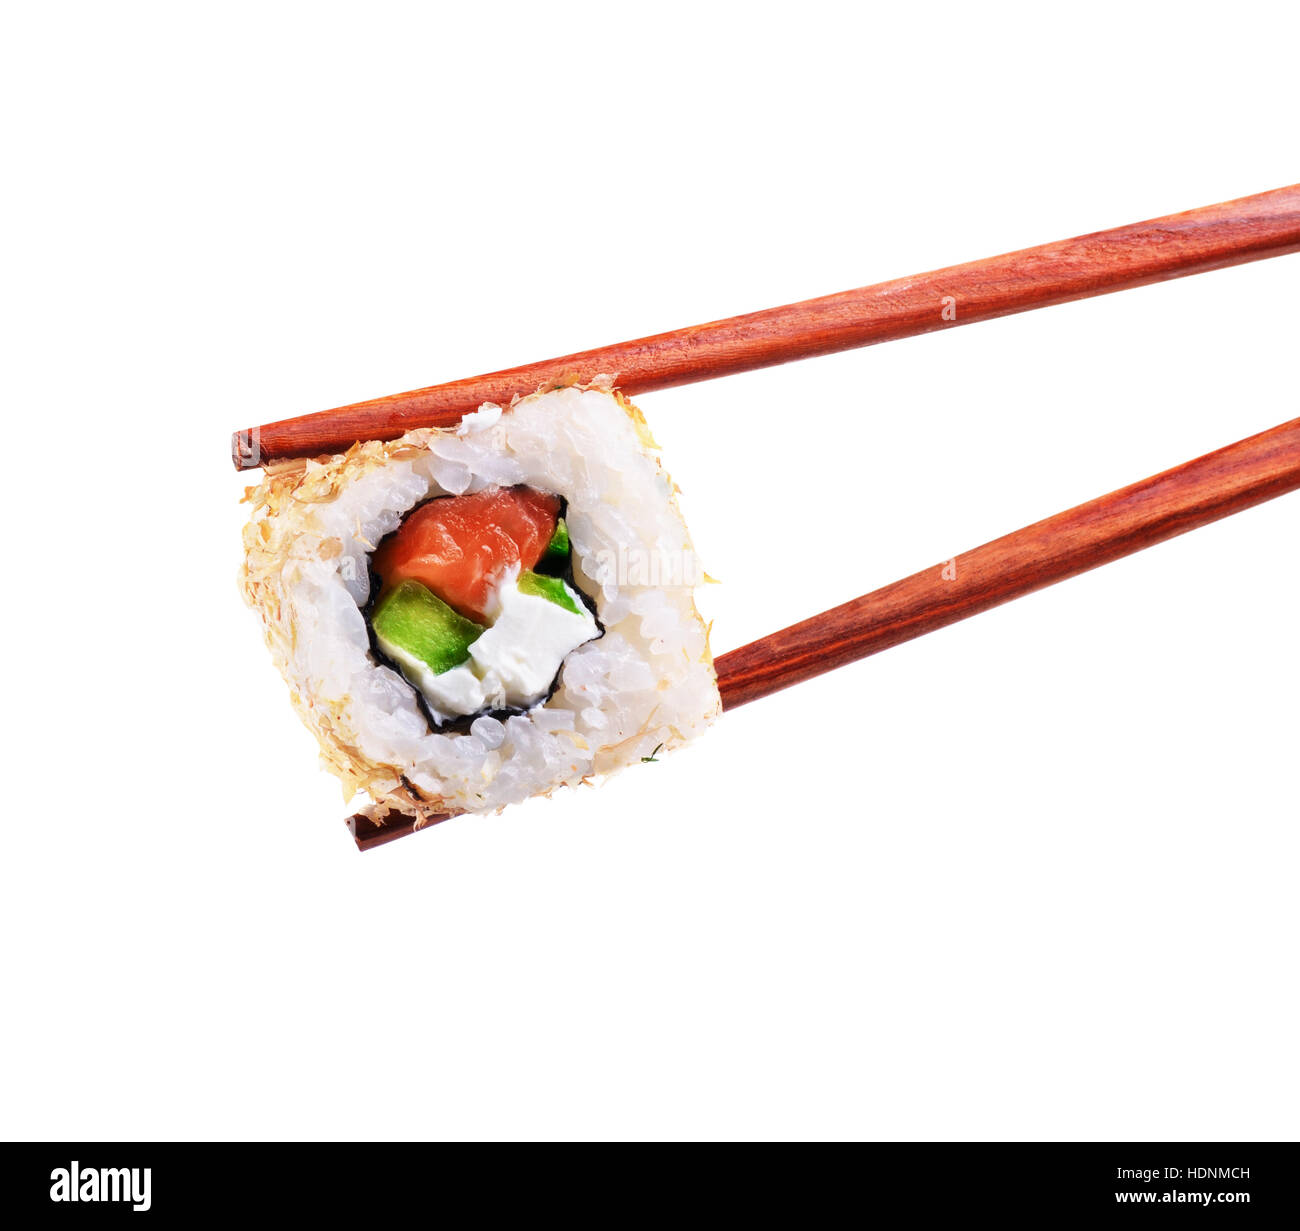 L'avocat et saumon sushi roll avec des baguettes isolé sur fond blanc Banque D'Images